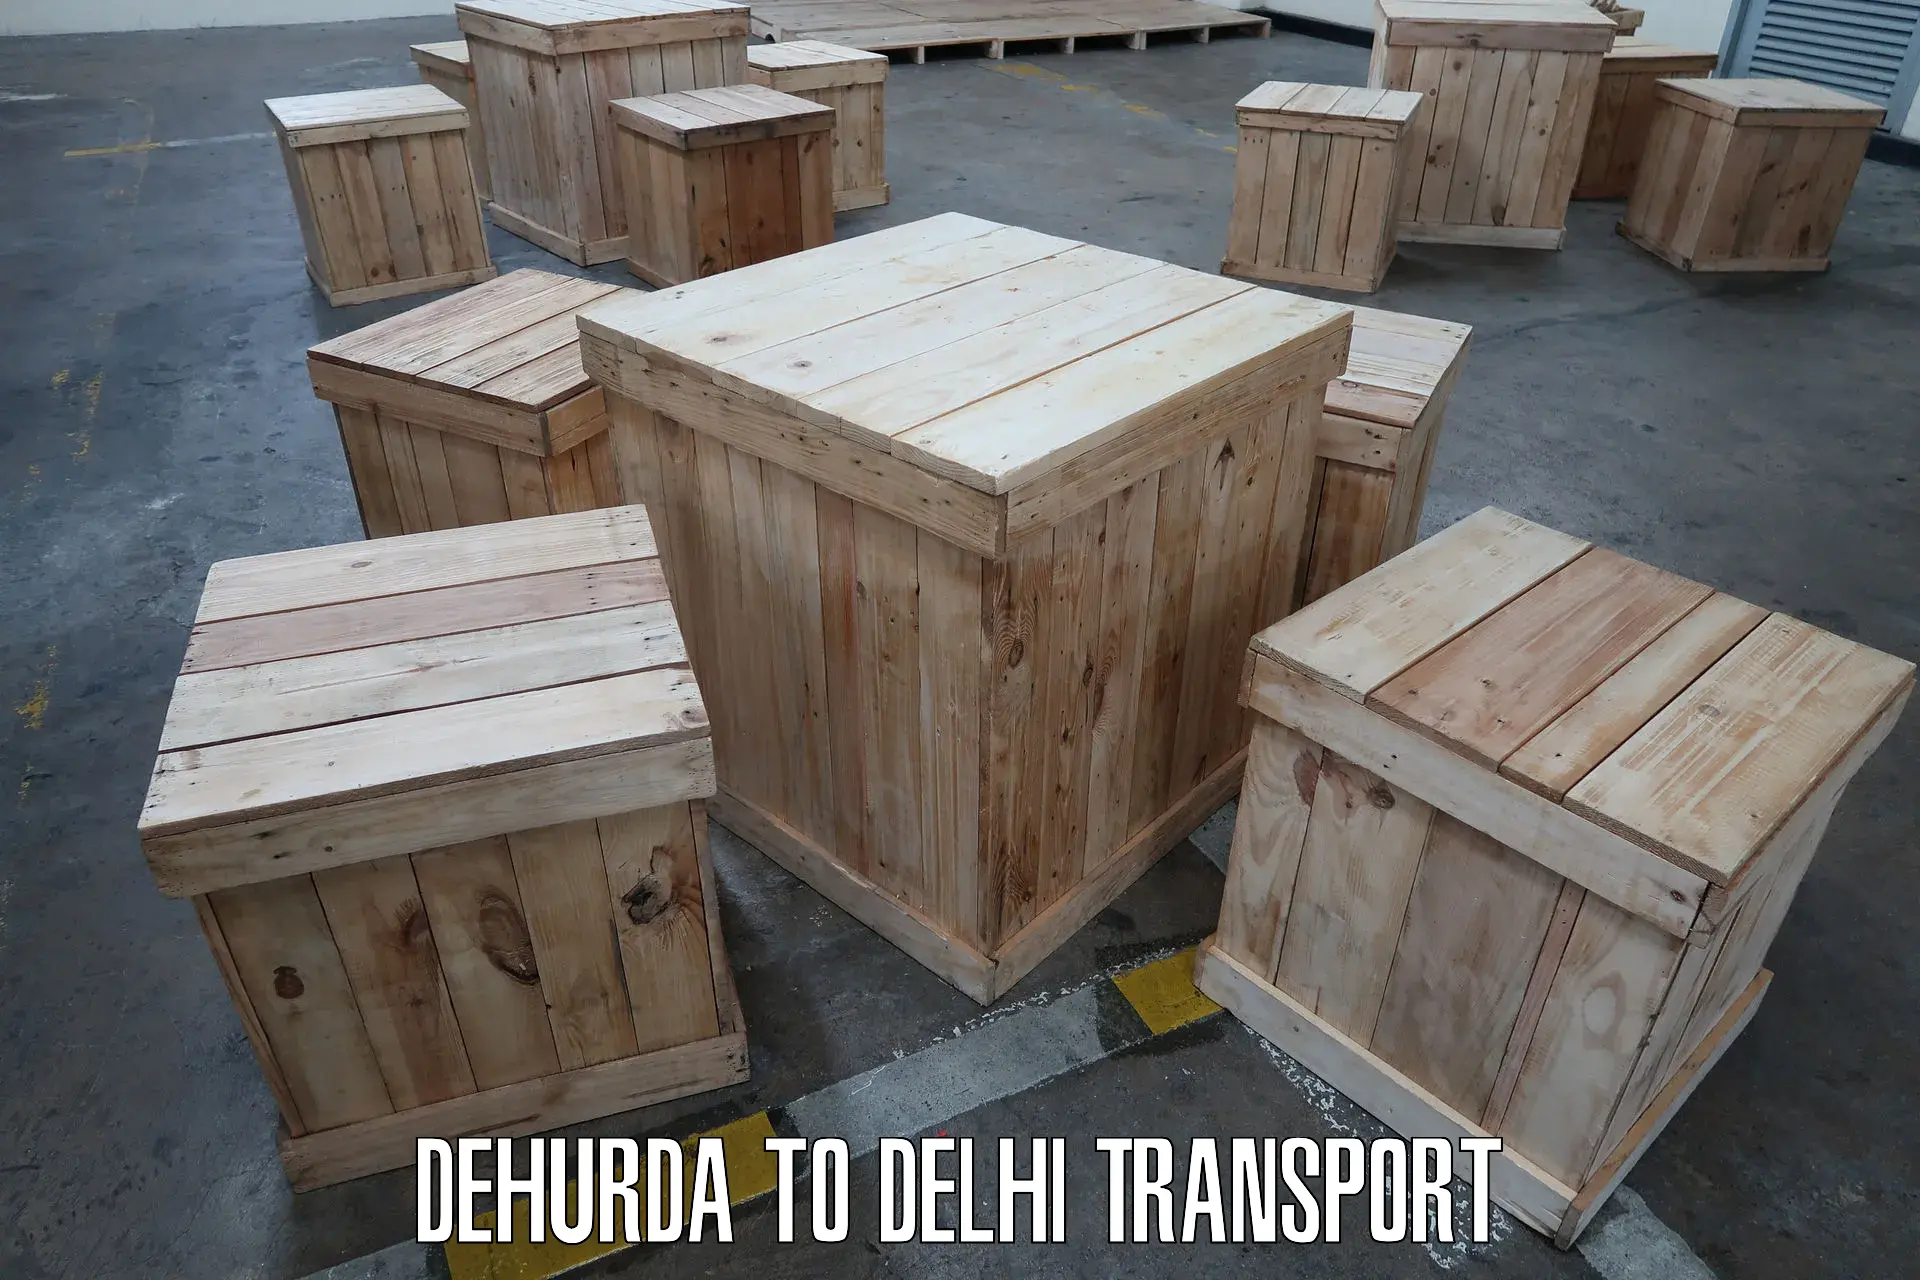 International cargo transportation services Dehurda to NCR